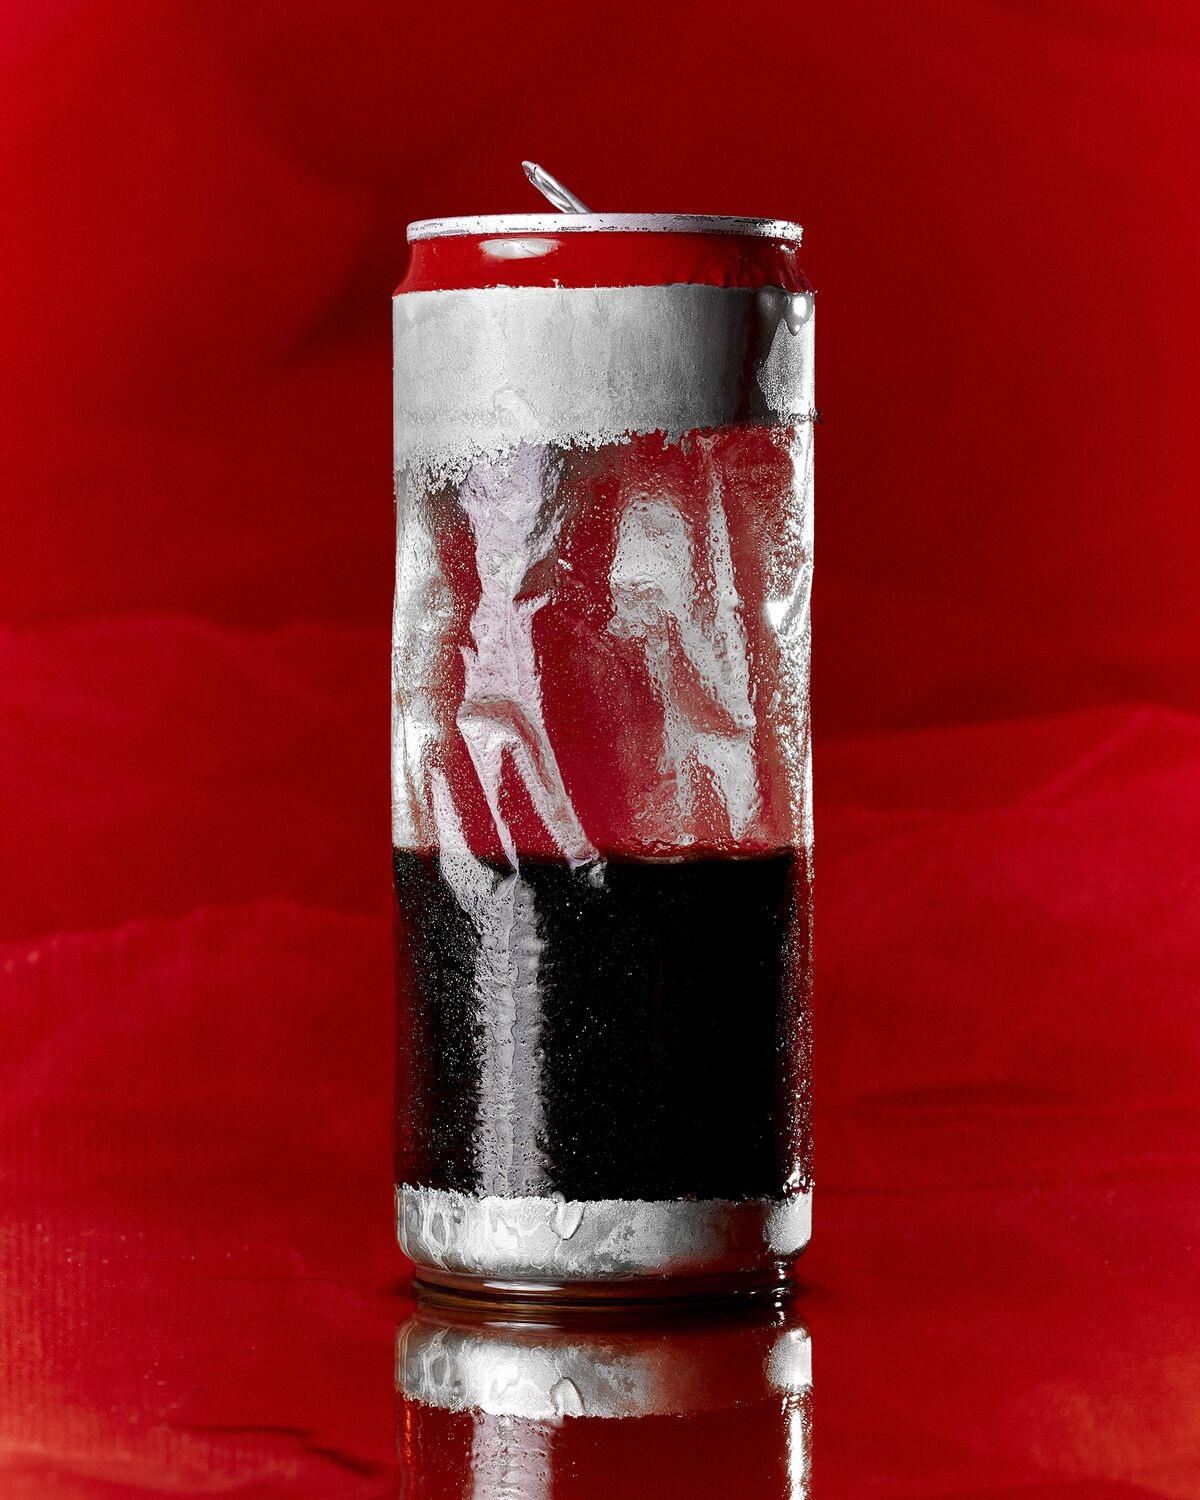 Hé lộ vụ trộm bí mật kinh doanh chấn động ở Coca-Cola